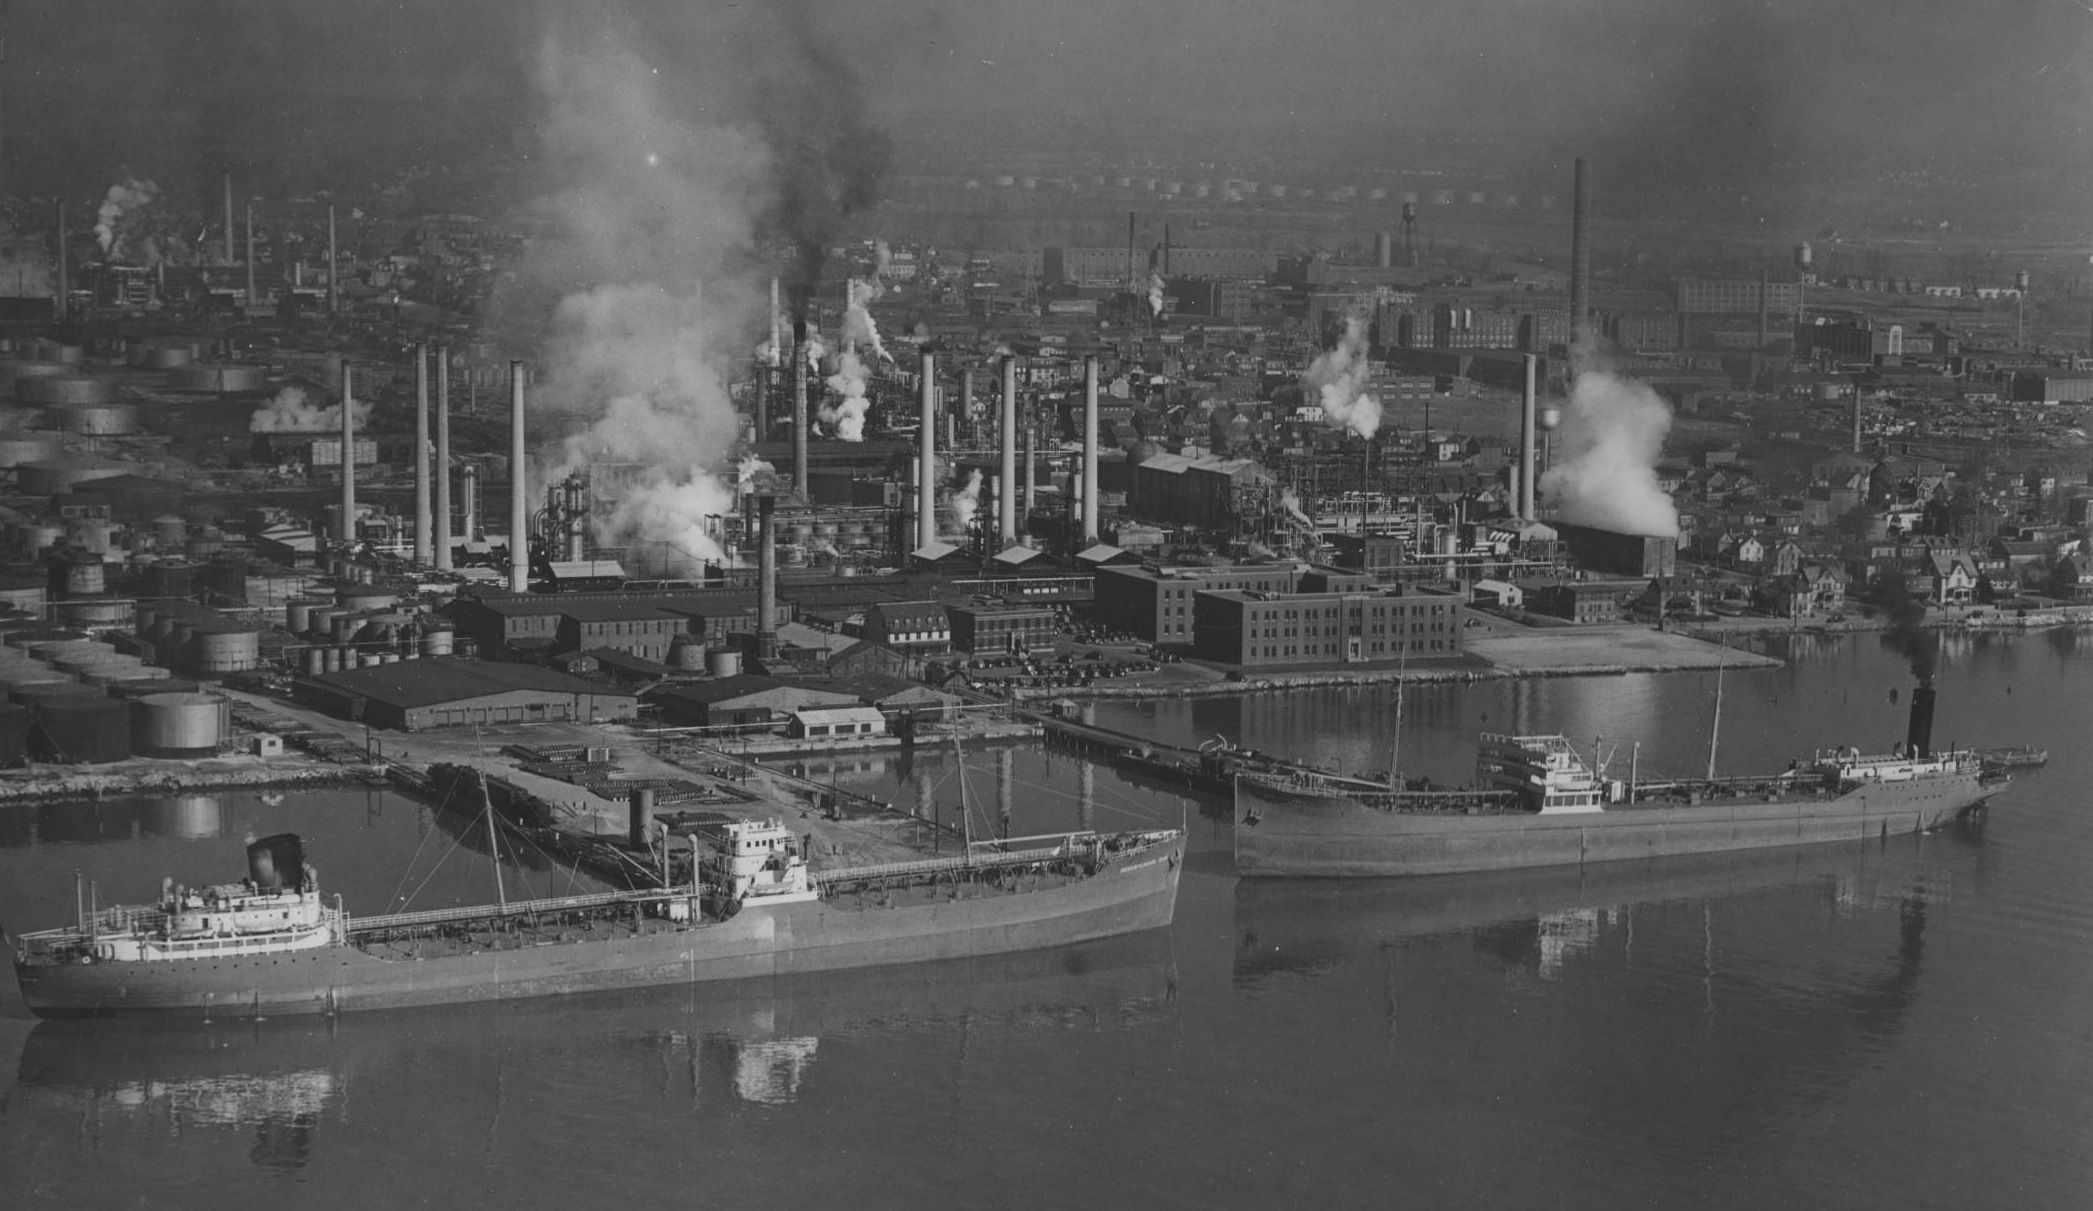 Sun Oil Ship Dock 1941